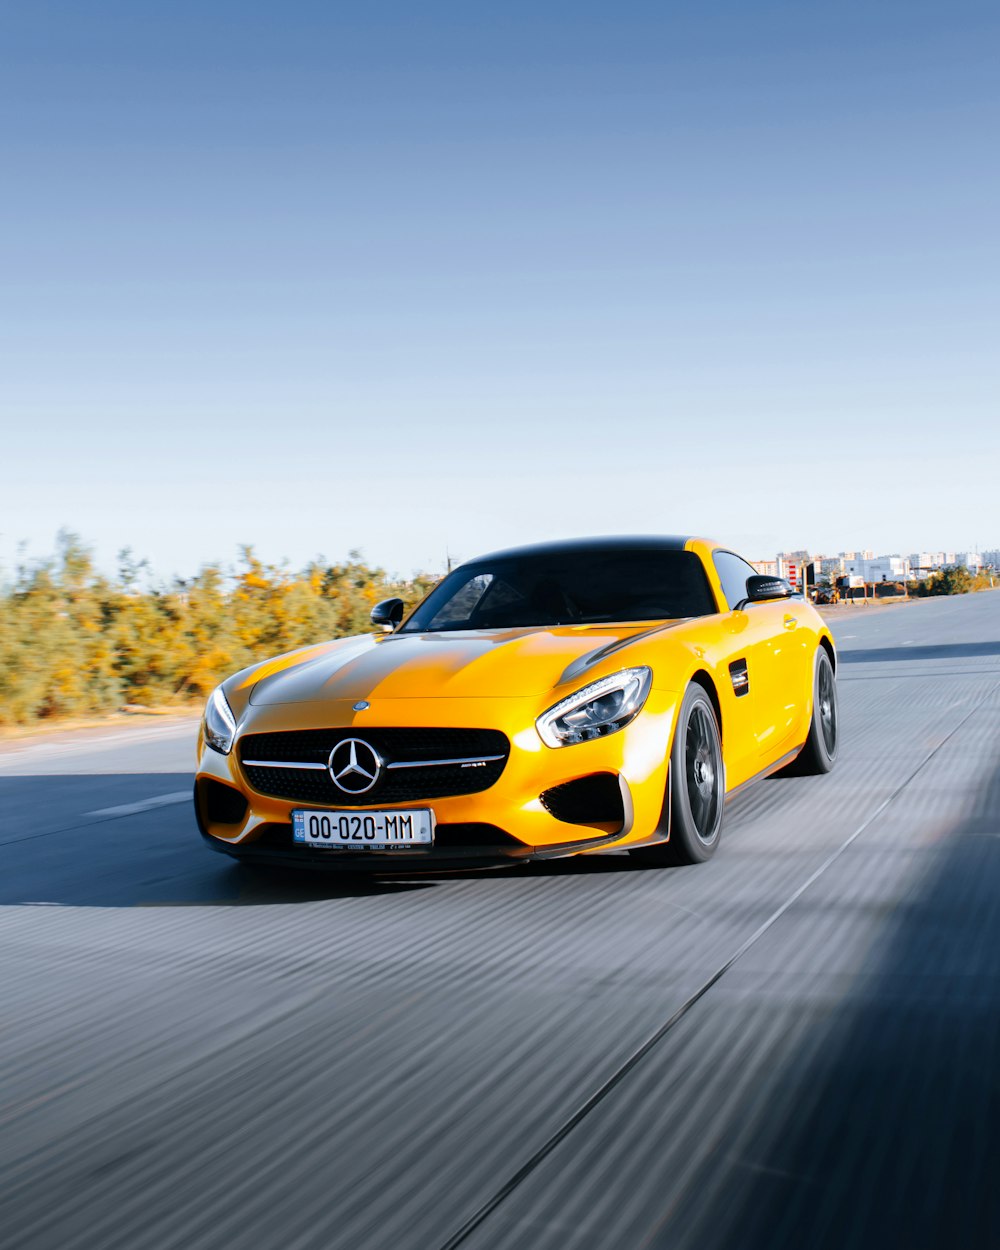 Imágenes de Mercedes Car | Descarga imágenes gratuitas en Unsplash